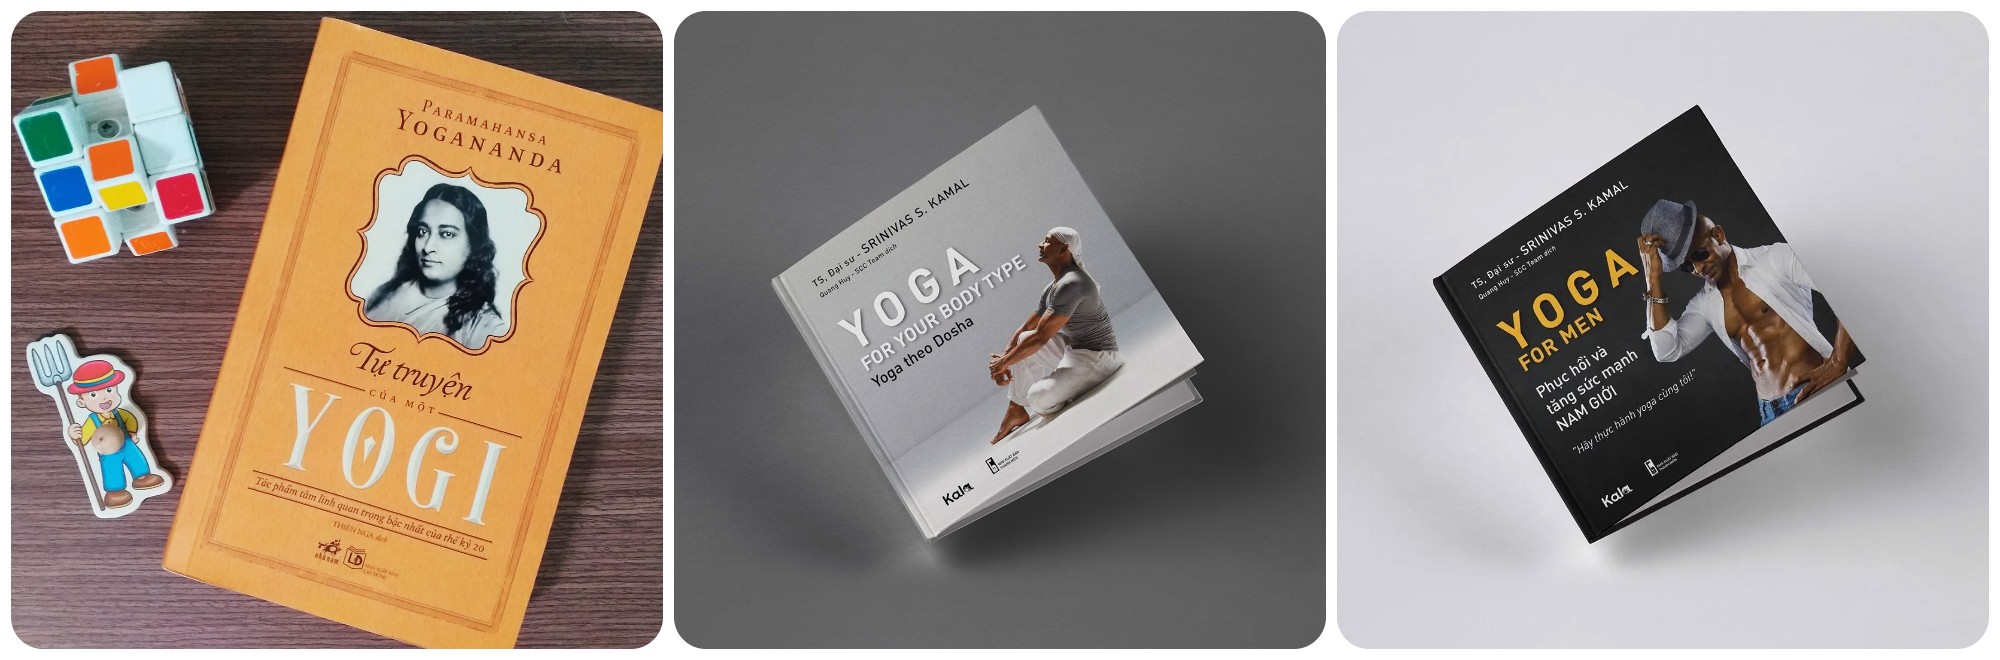 3 cuốn sách hay dành cho những người yêu bộ môn Yoga